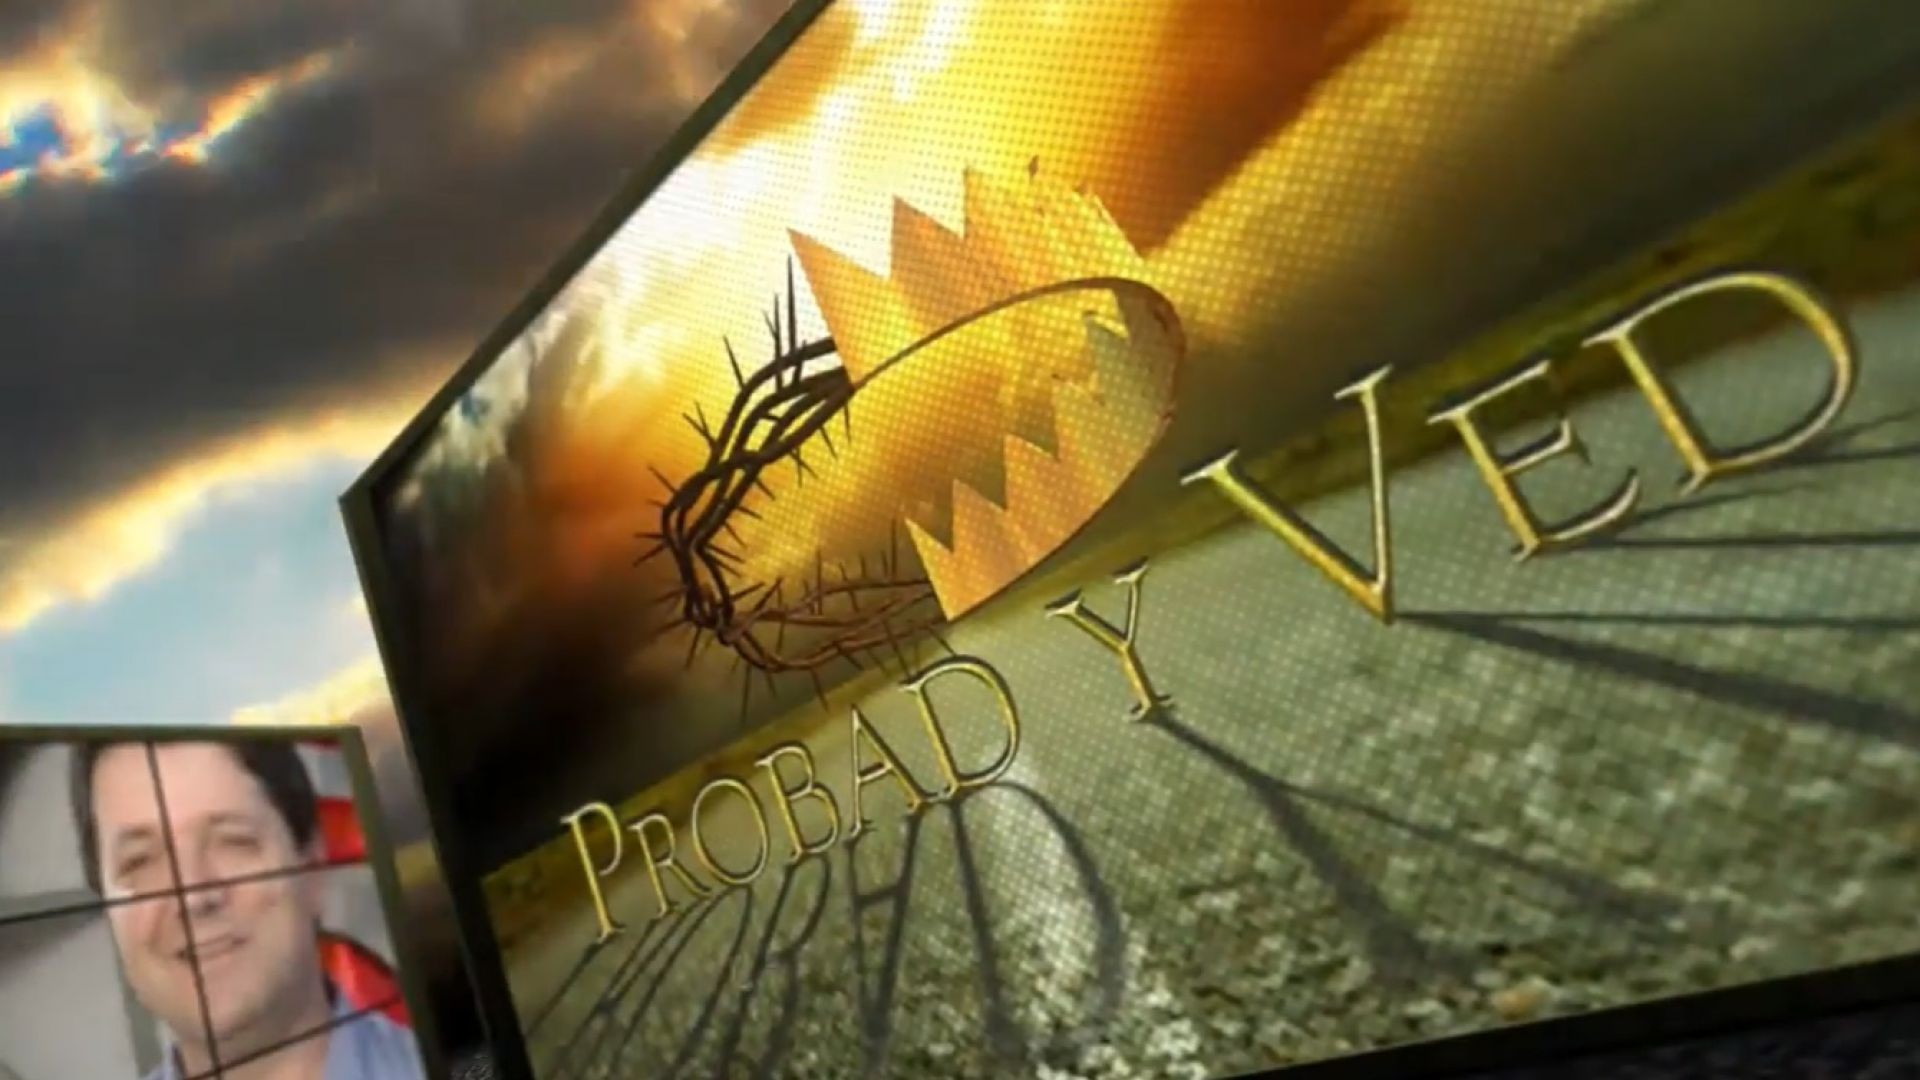 ⁣Probad y Ved 2012 - Sociedad con Dios